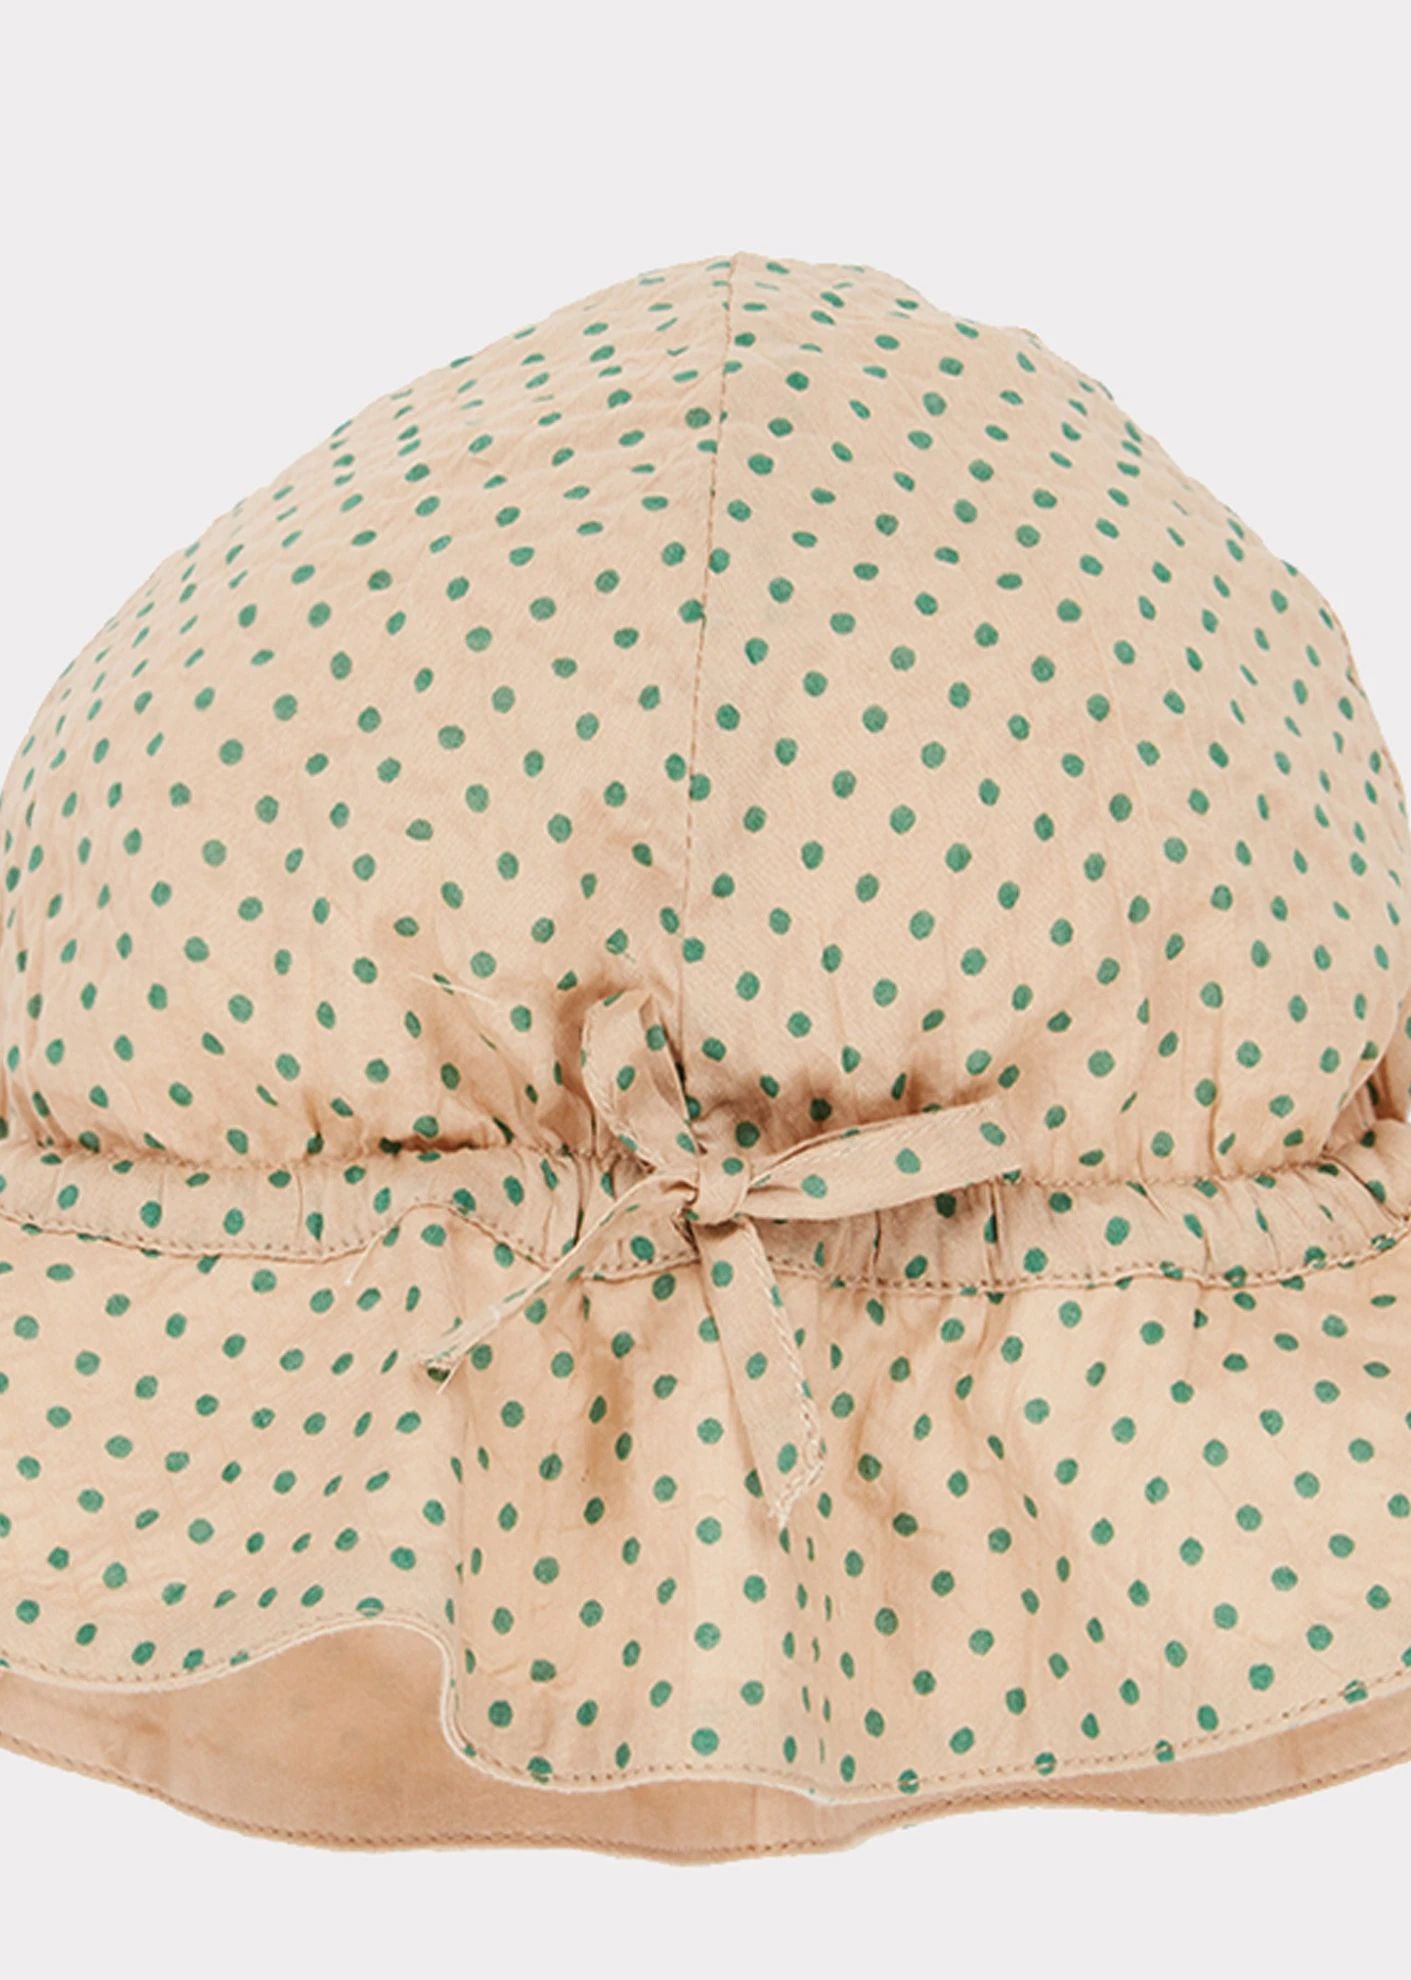 Baby Girls Green Dots Sun Hat